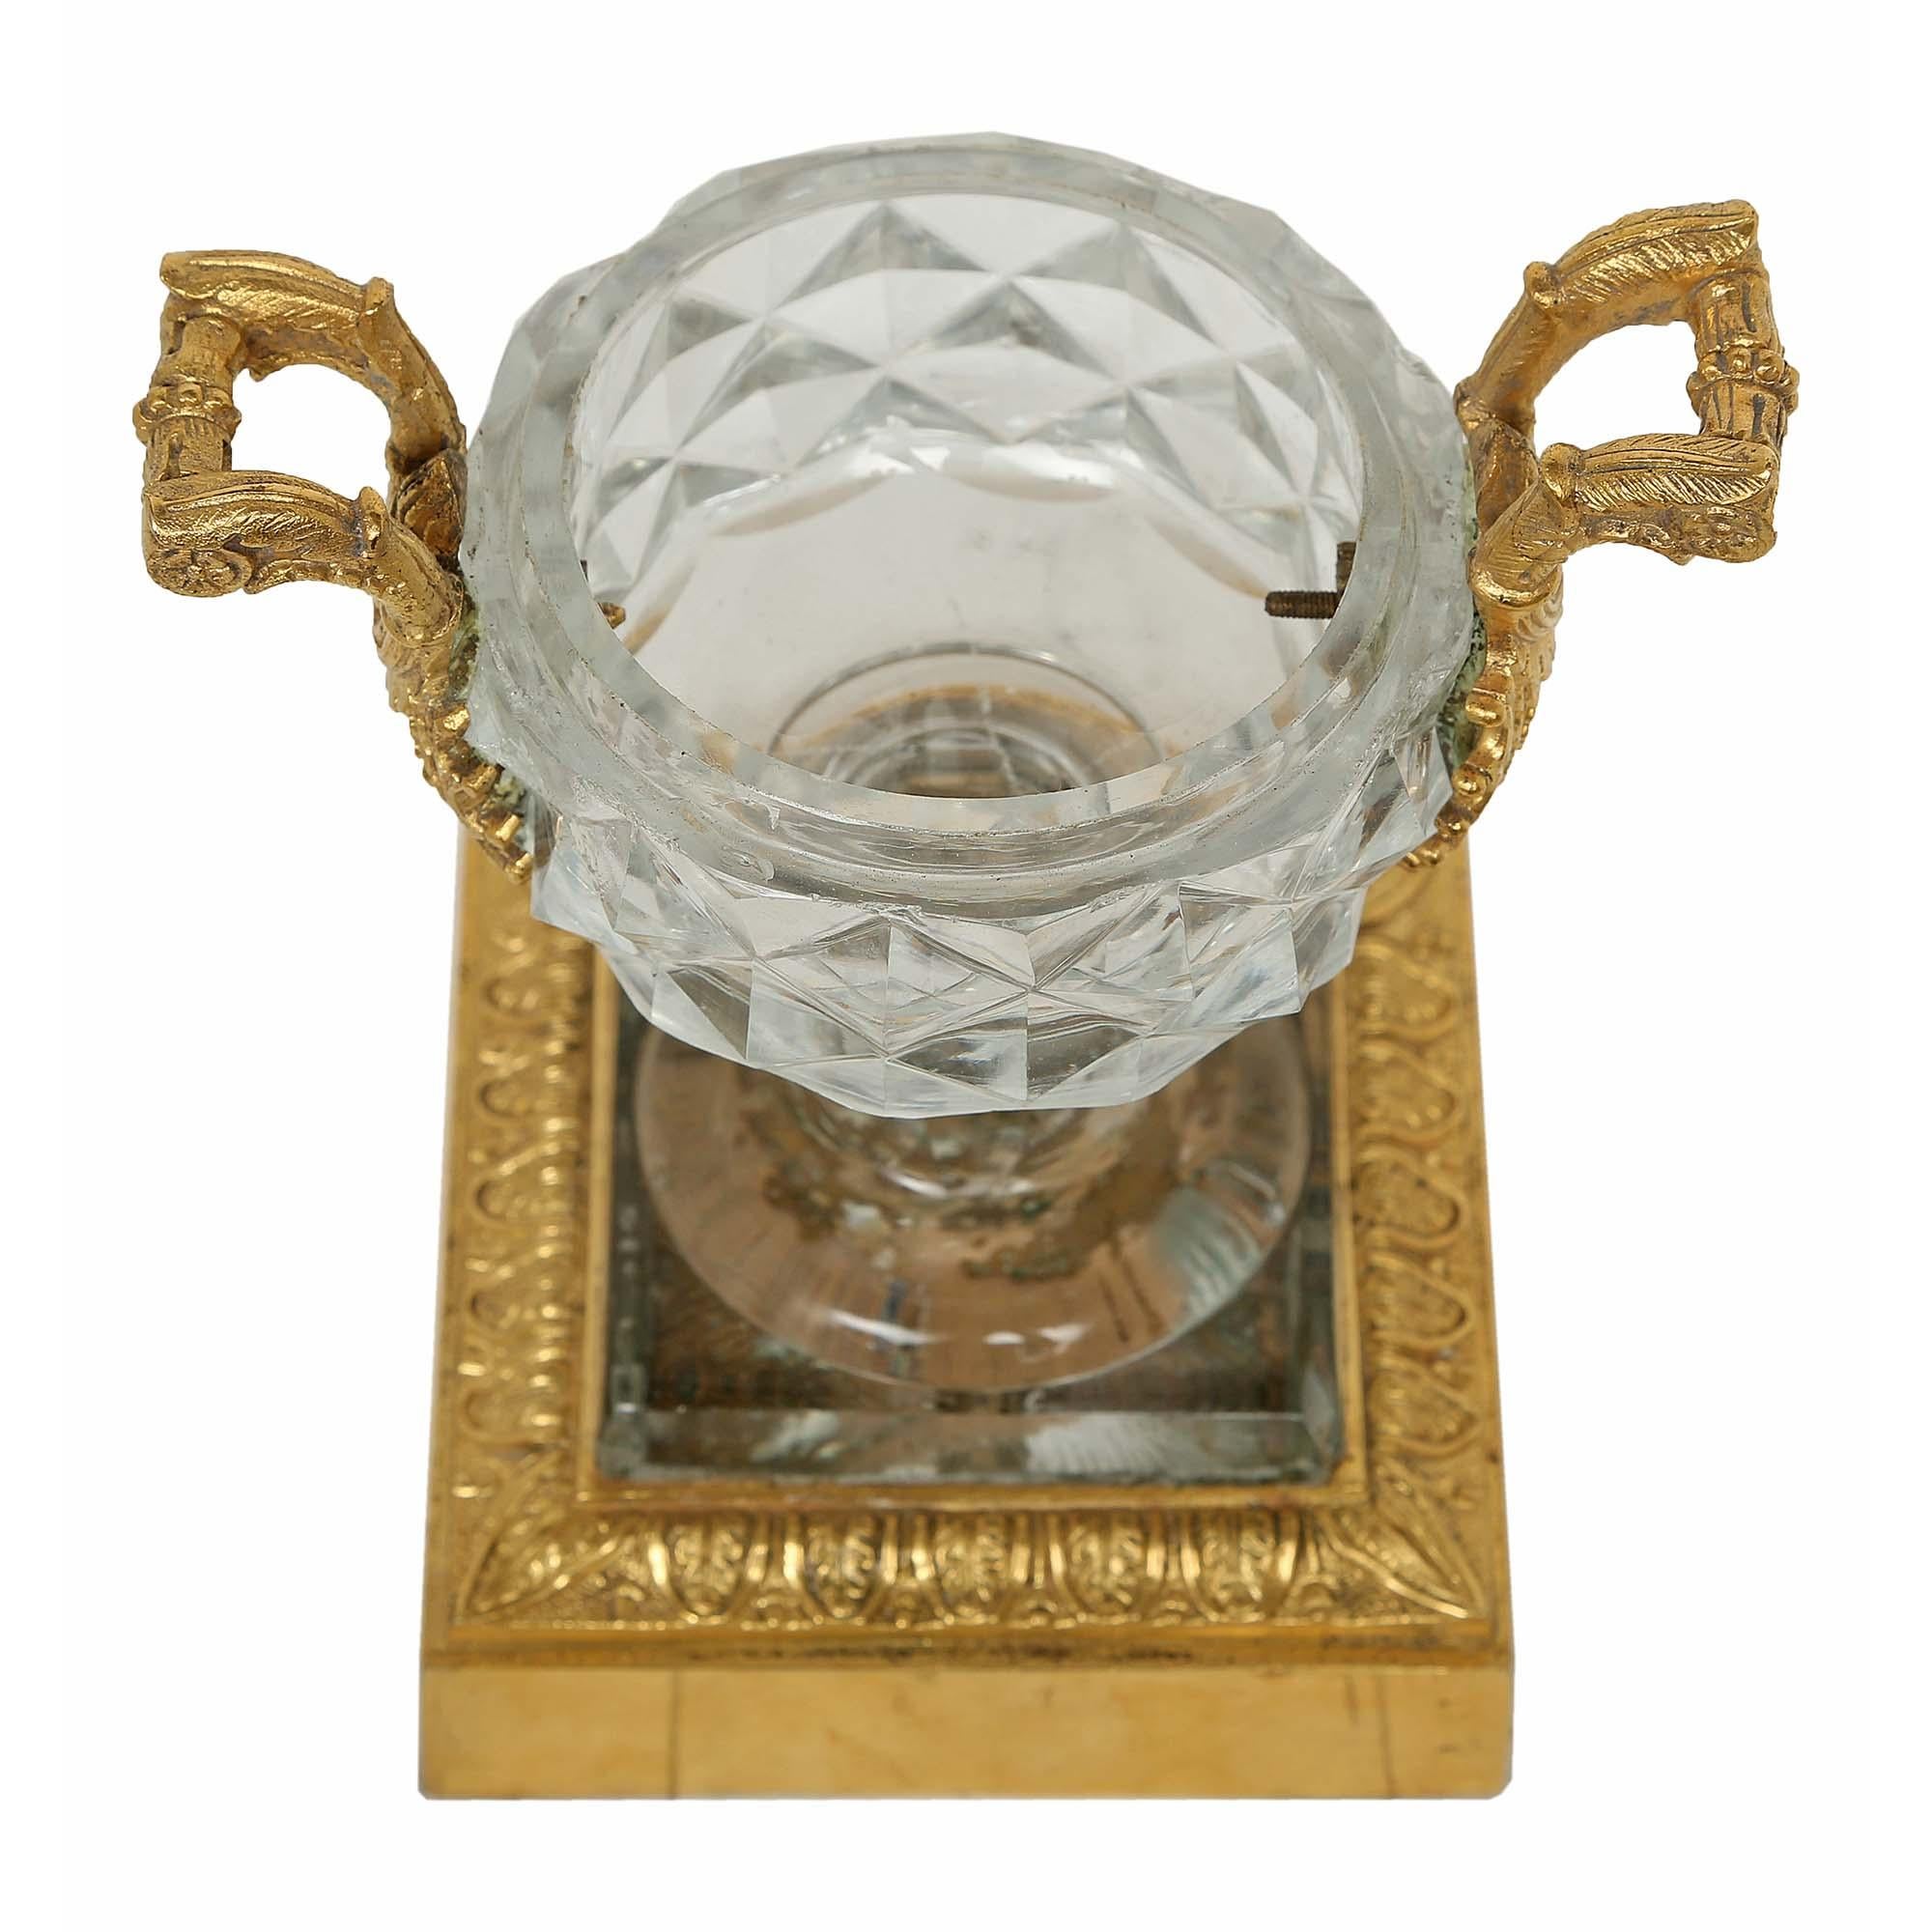 Une paire exquise de tazza en cristal de Baccarat et bronze doré du 19ème siècle. Chaque tazza en cristal de Baccarat repose sur une base carrée en bronze doré avec une bordure en forme de feuille d'acanthe. Les urnes en cristal merveilleusement